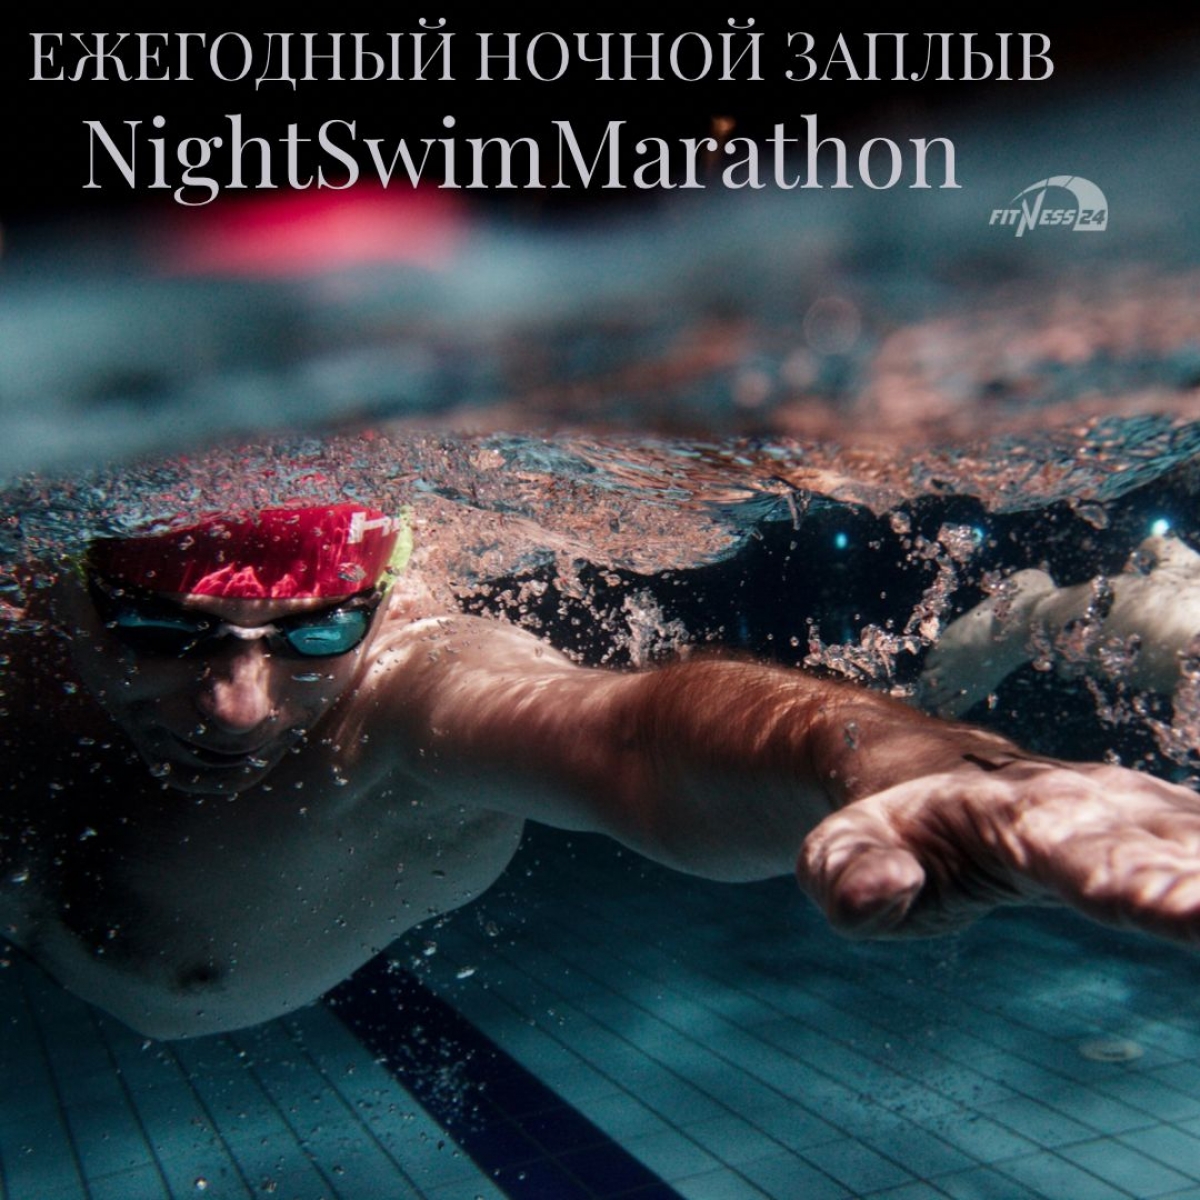 Ежегодный ночной заплыв NightSwimMarathon от Grand Swim Series.